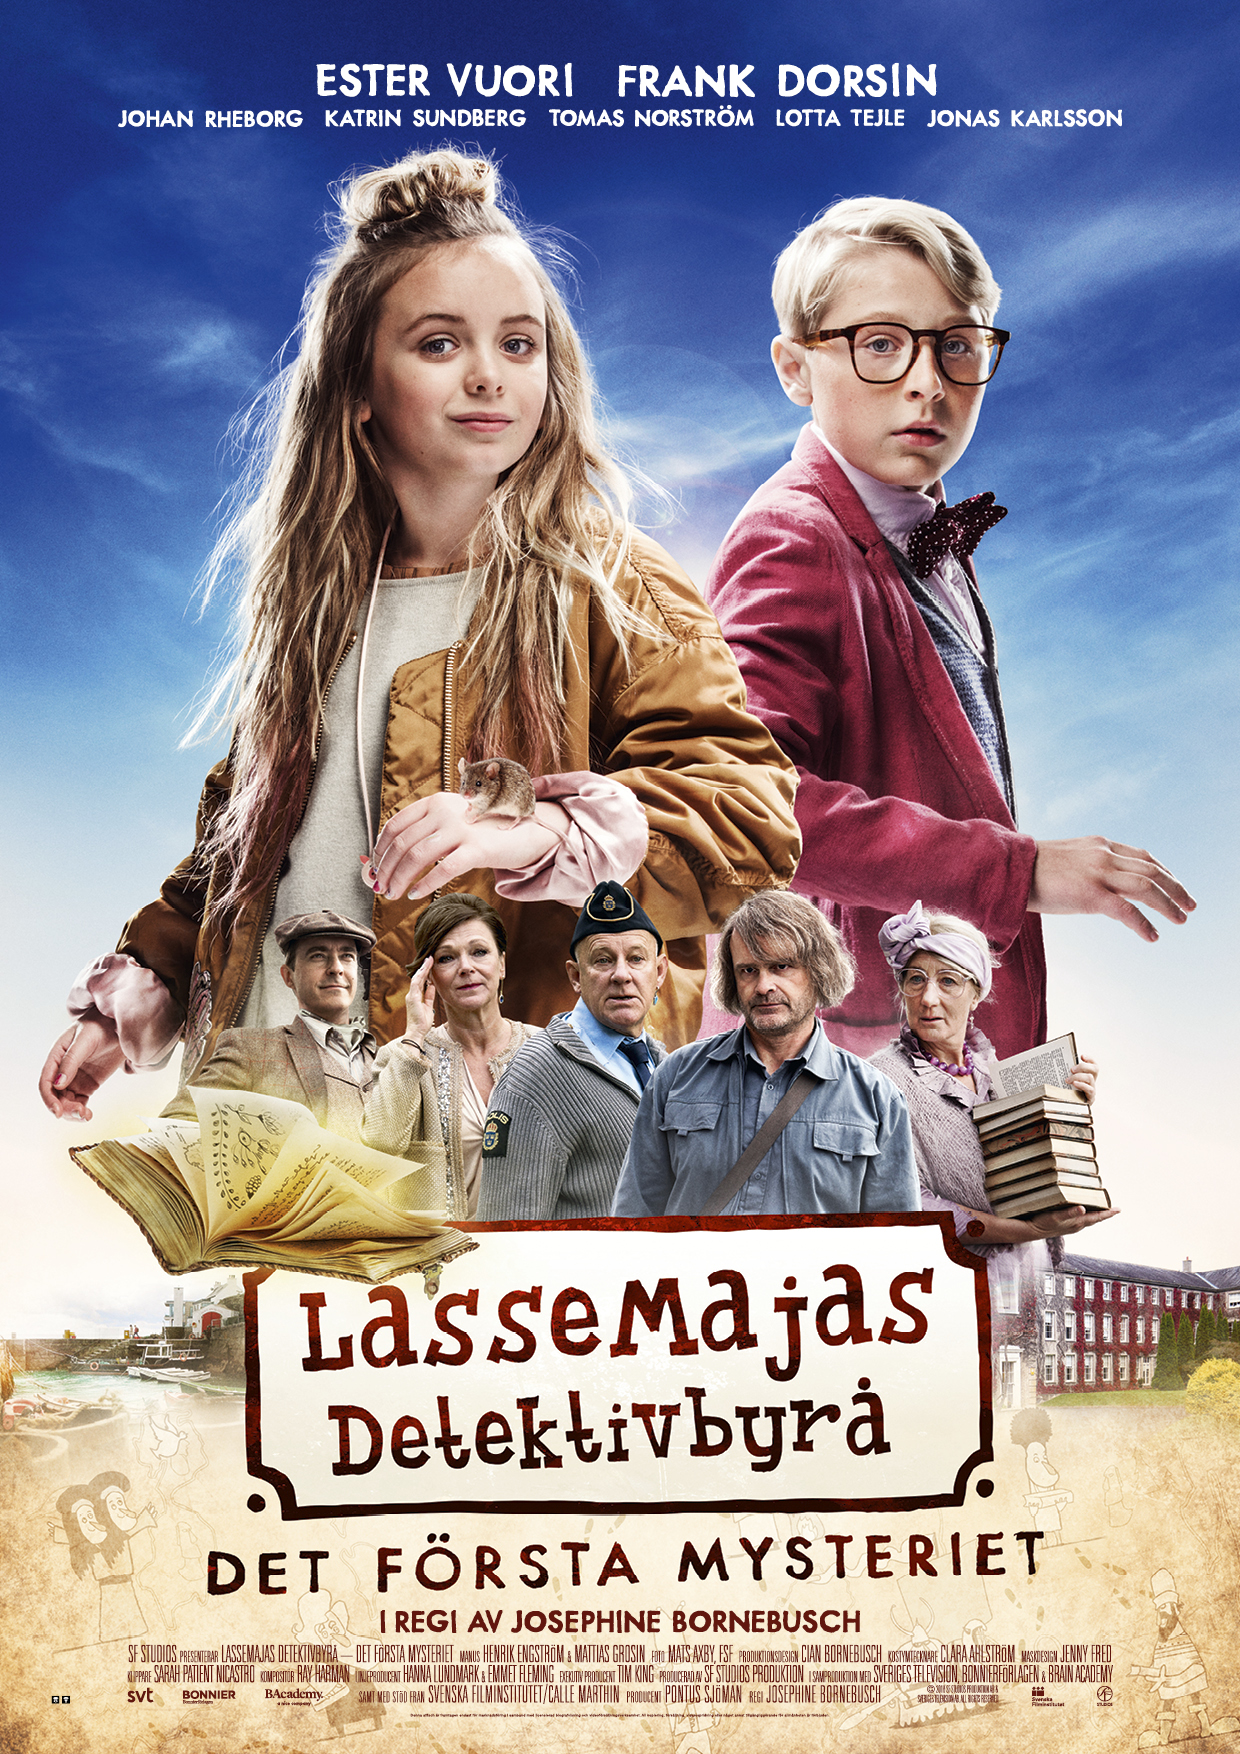 LasseMajas detektivbyrå - Det första mysteriet (2018) постер